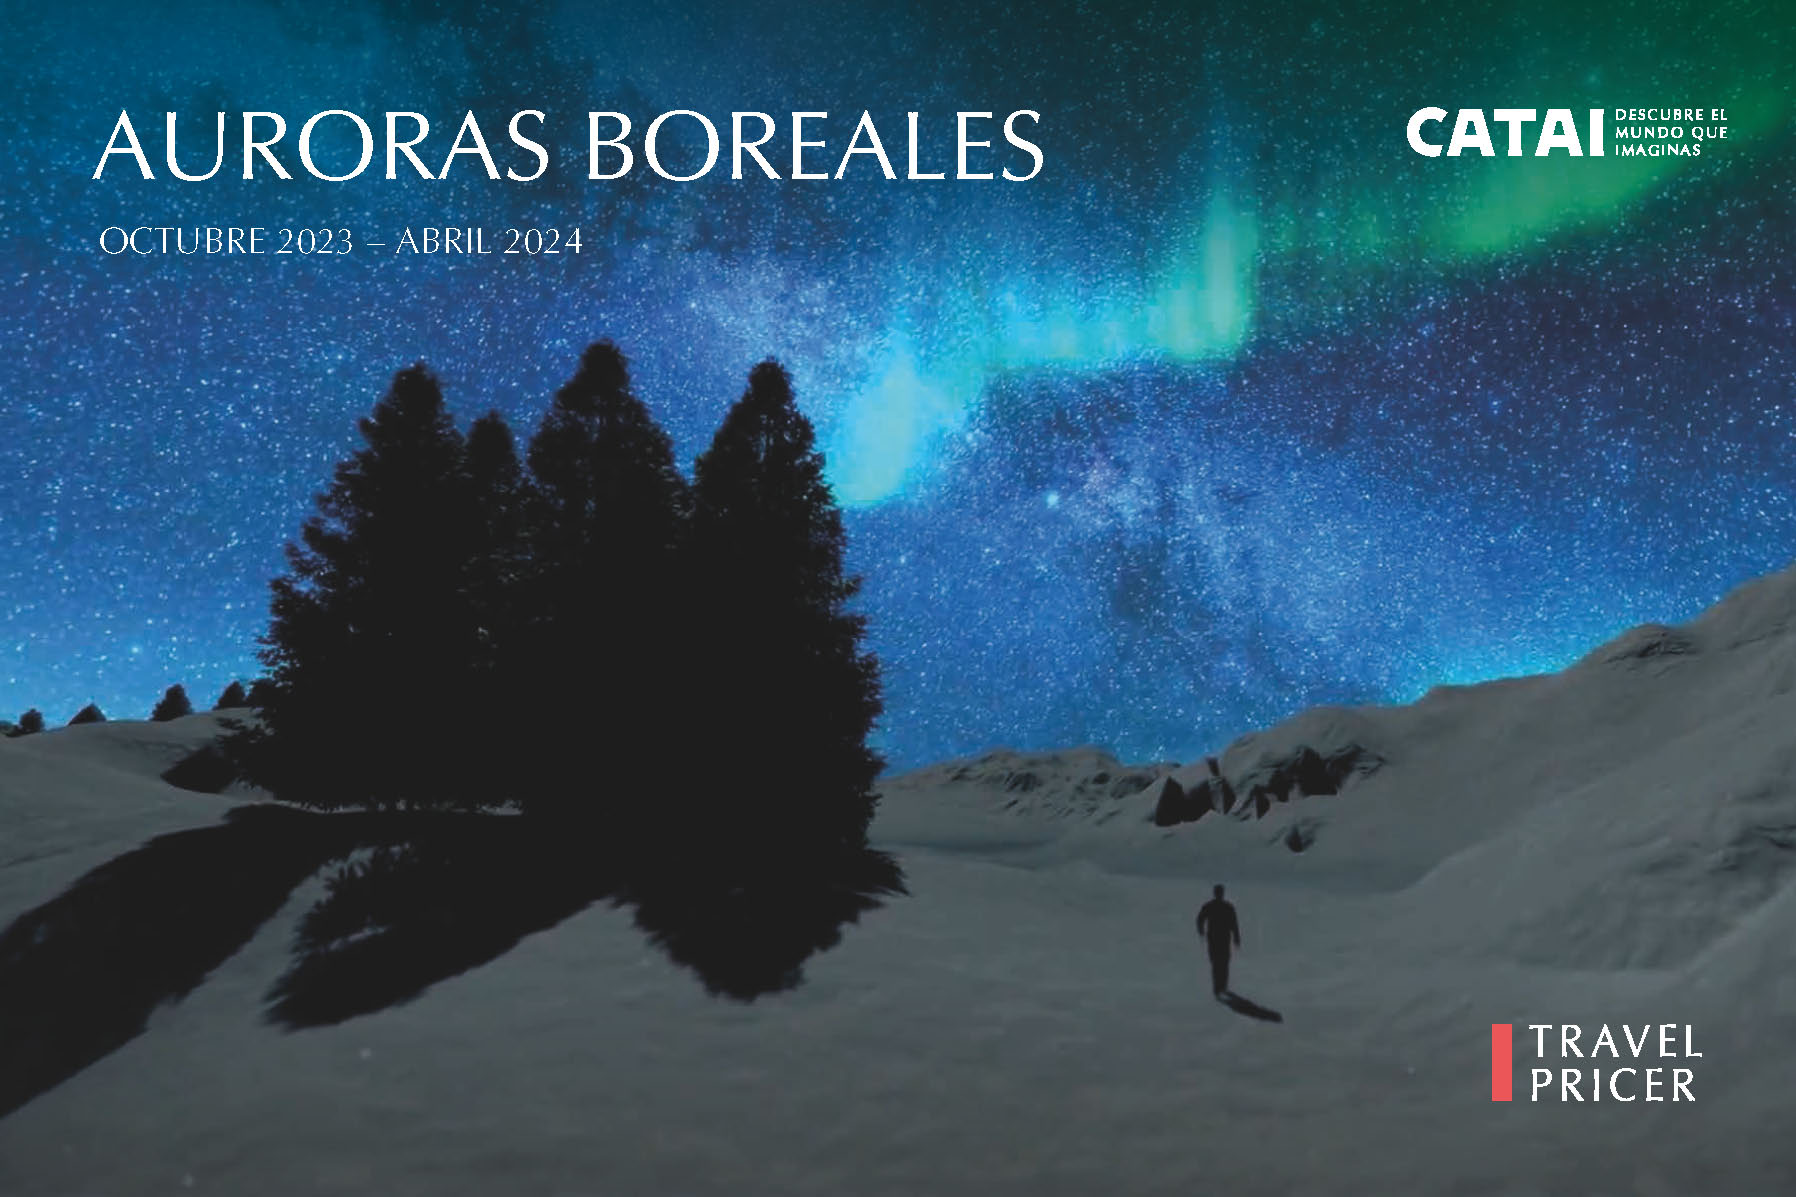 Catalogo Catai Auroras Boreales Otoño 2023 Invierno 2024